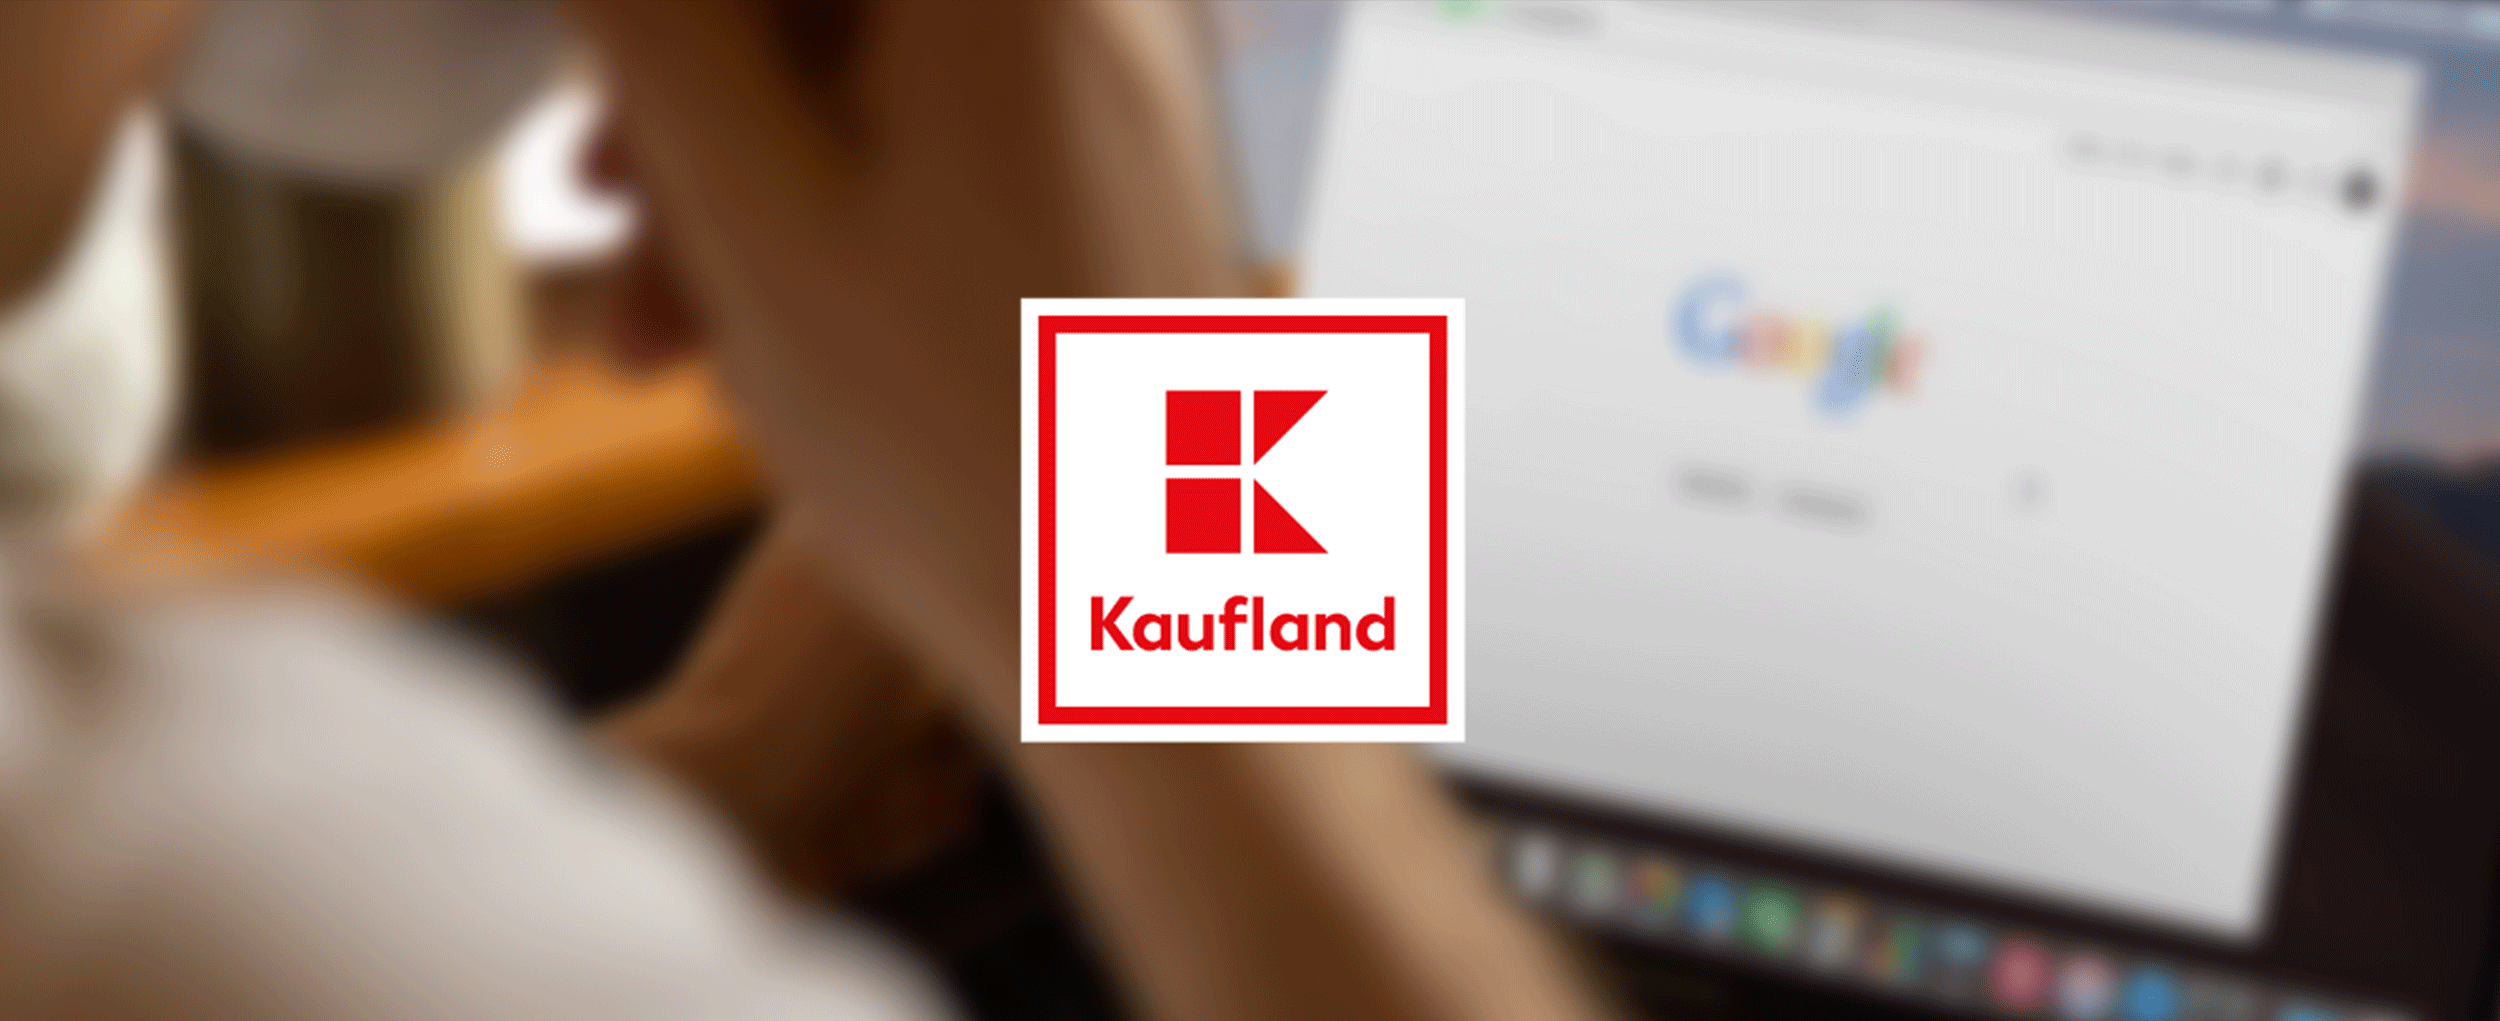 Kaufland | Google Reviews 